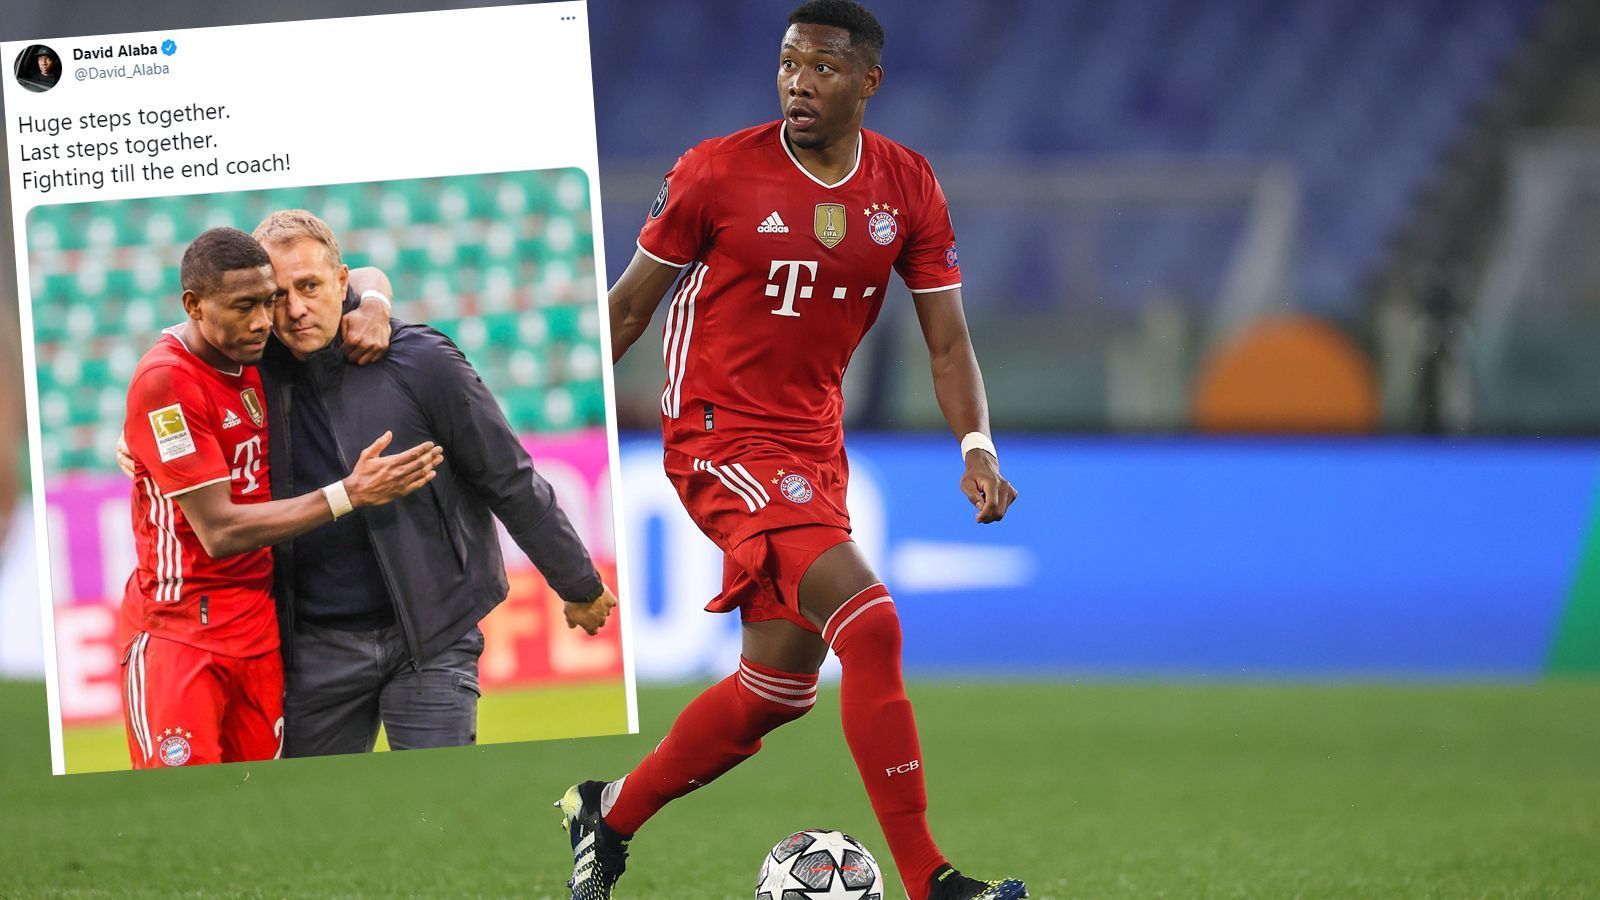 
                <strong>David Alaba reagiert auf Twitter</strong><br>
                Als erster Bayern-Spieler hat sich David Alaba auf Twitter zu Flicks Entscheidung geäußert. Auch der Österreicher verlässt den FC Bayern nach der Saison. Er verspricht, gemeinsam mit seinem Trainer bis zum Schluss zu kämpfen.
              